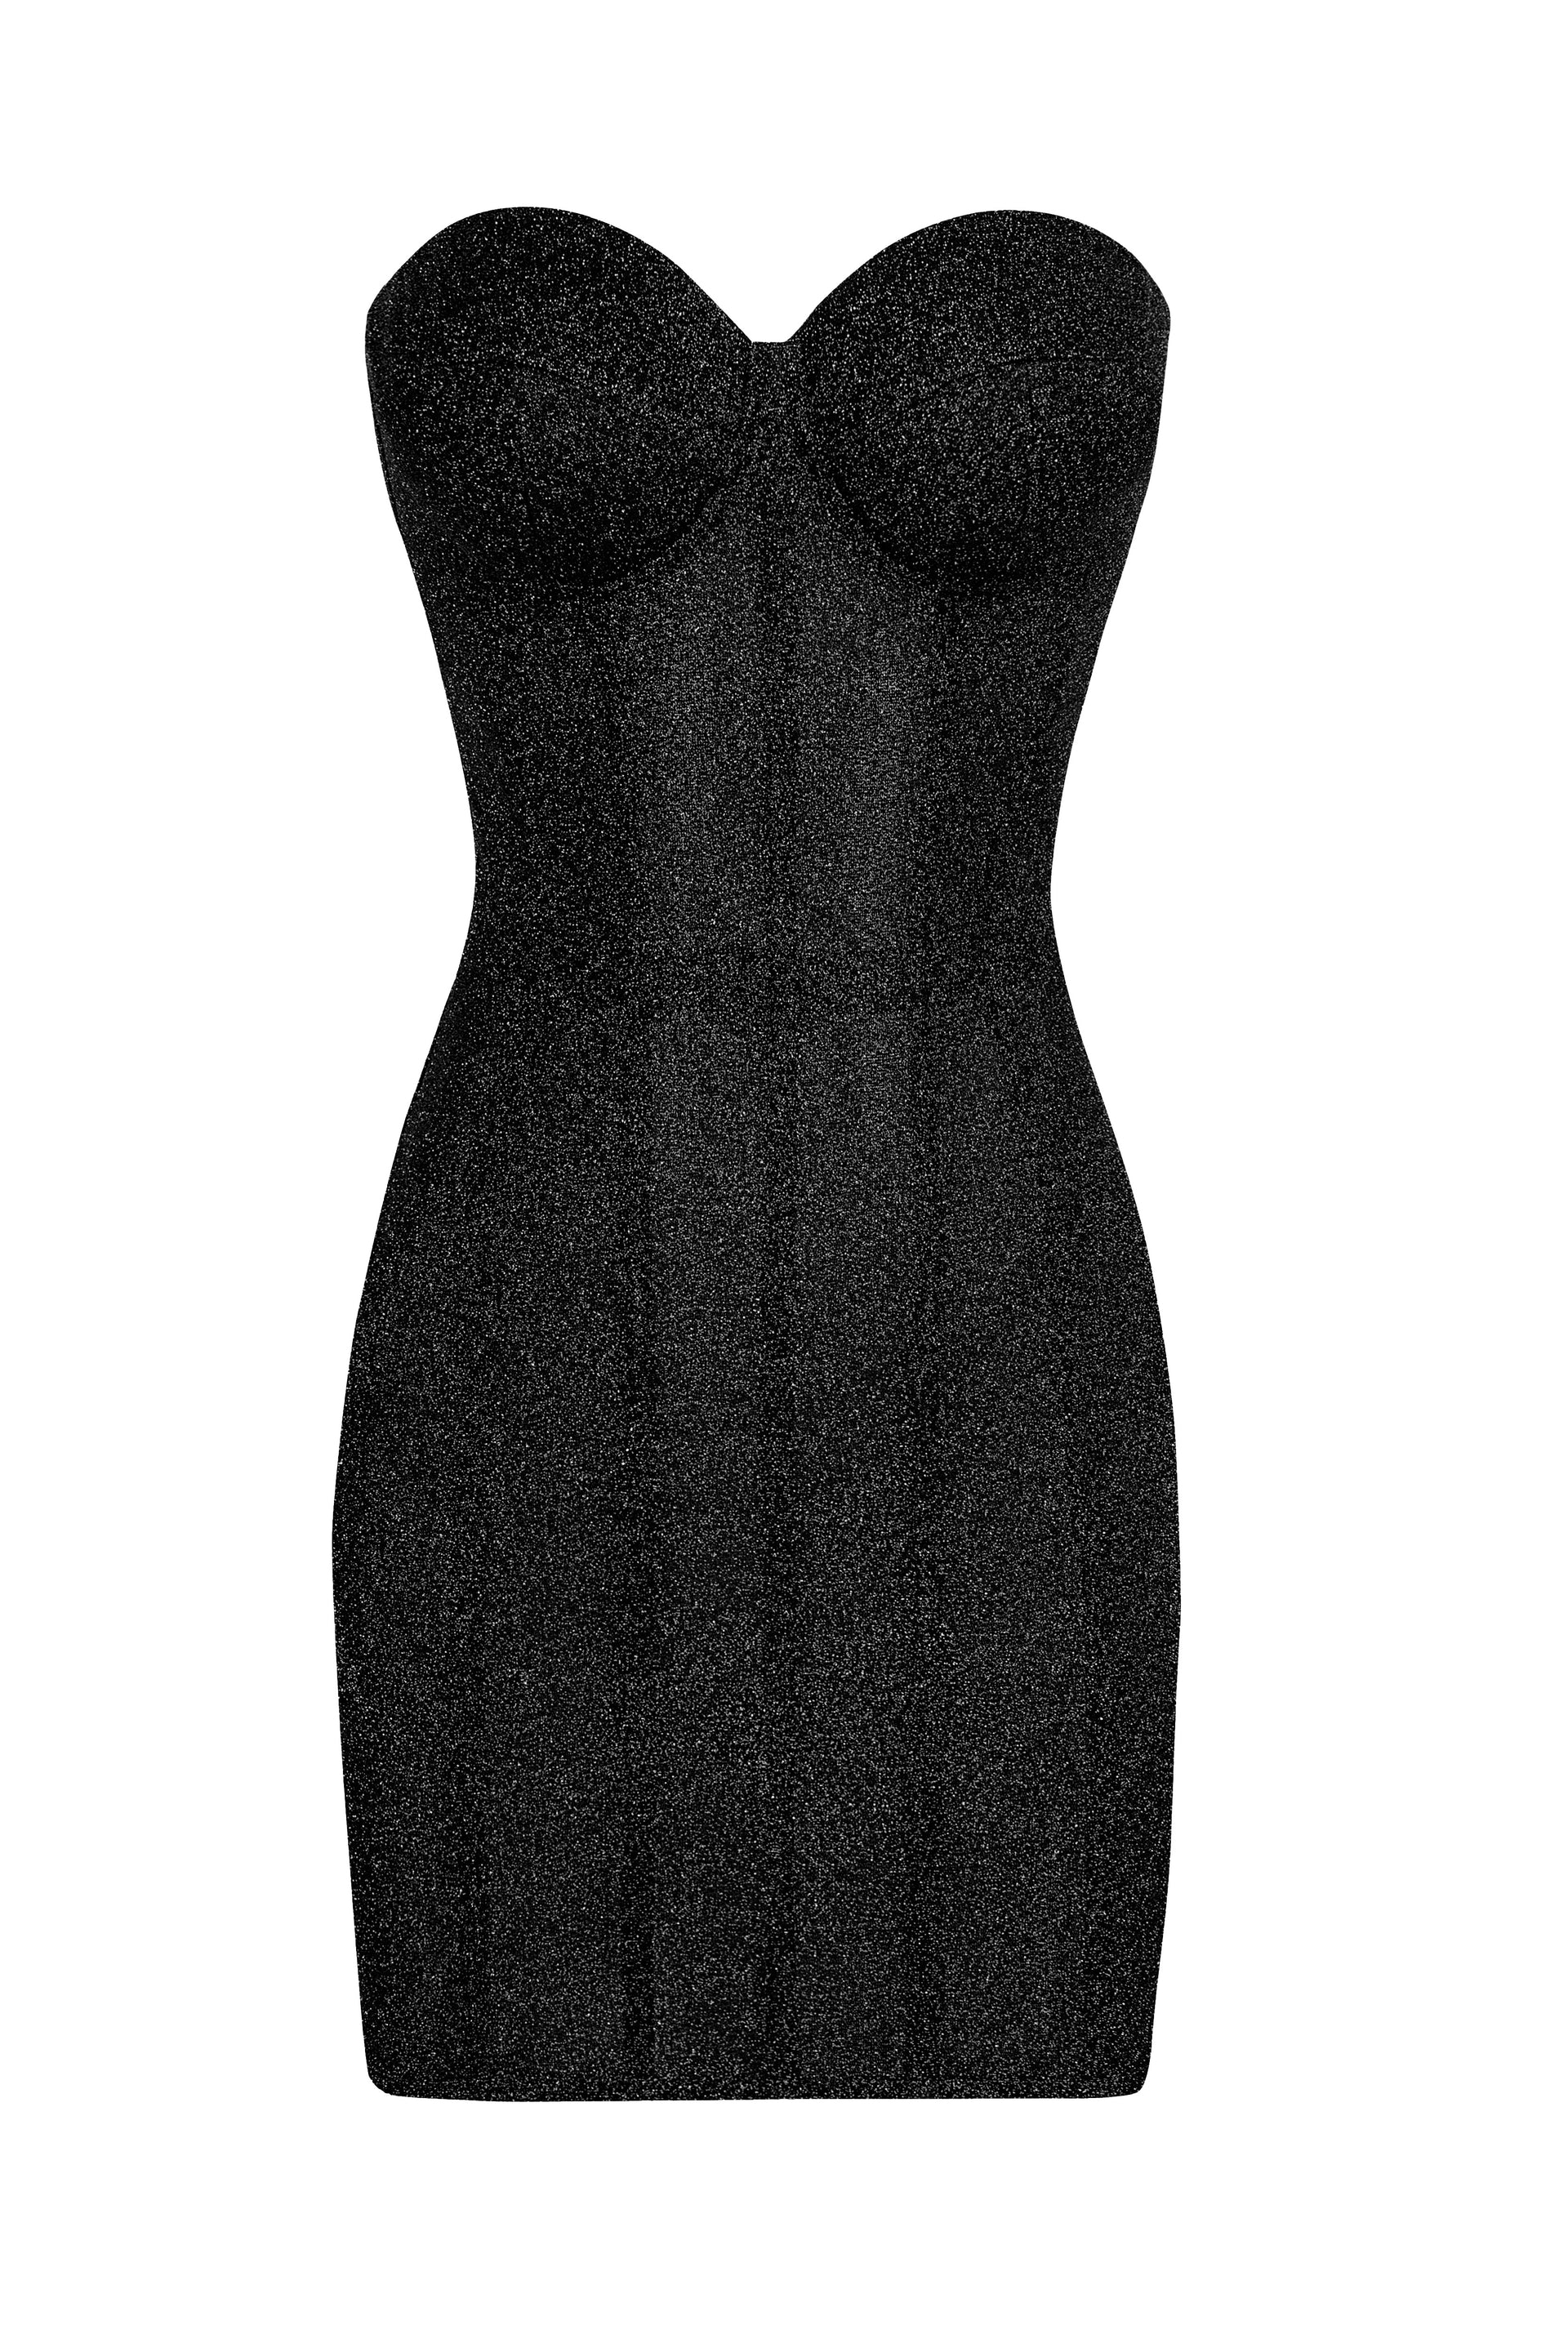 Brilliance drop black dress